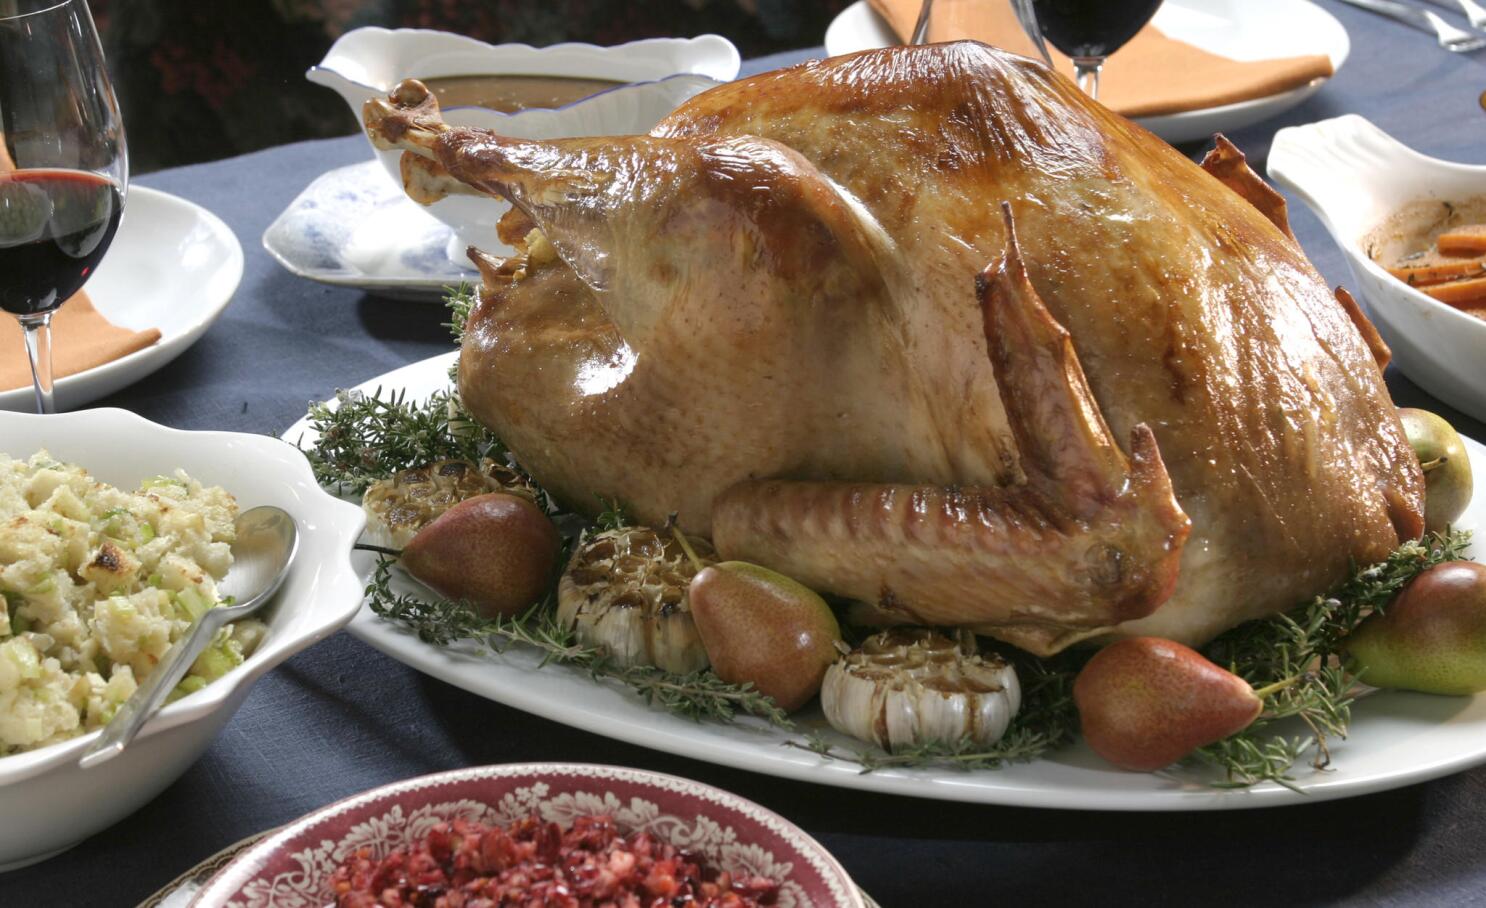 Slip Me Some Sage Poultry Rub Thanksgiving Seasoning Blend Gift